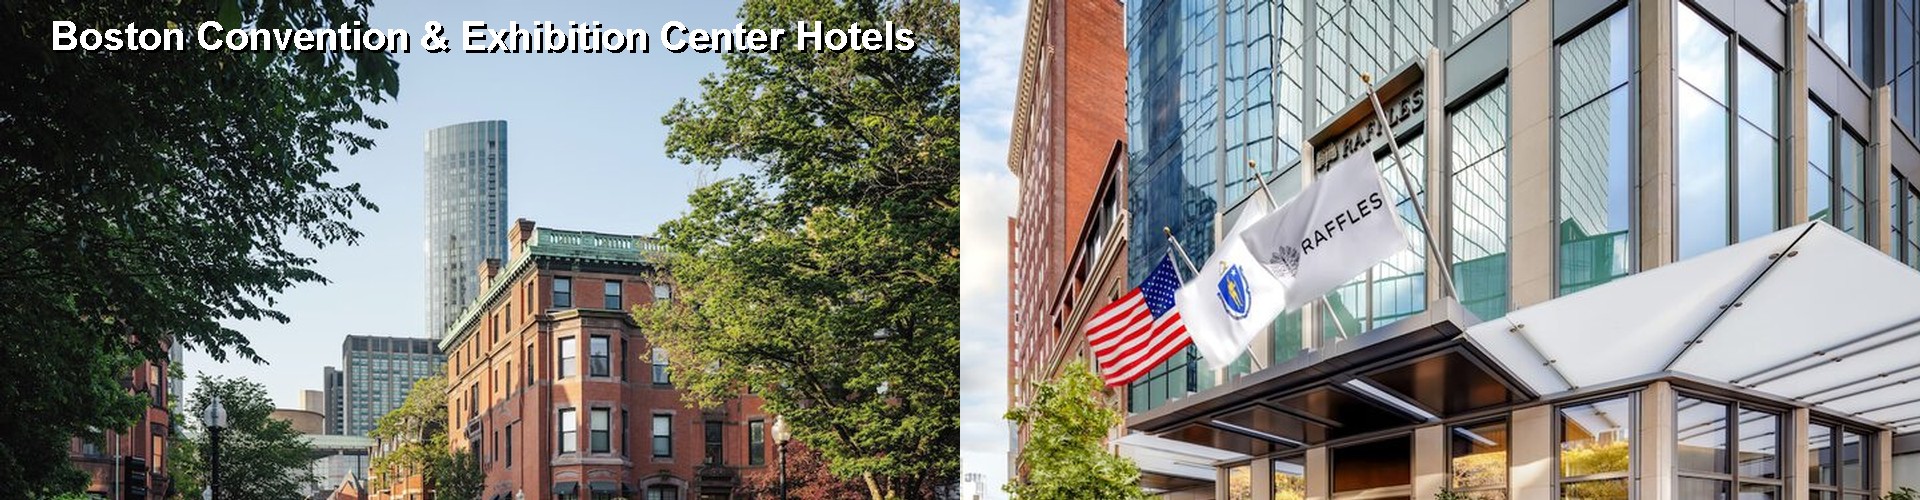 5 Best Hotels near Boston Convention & Exhibition Center